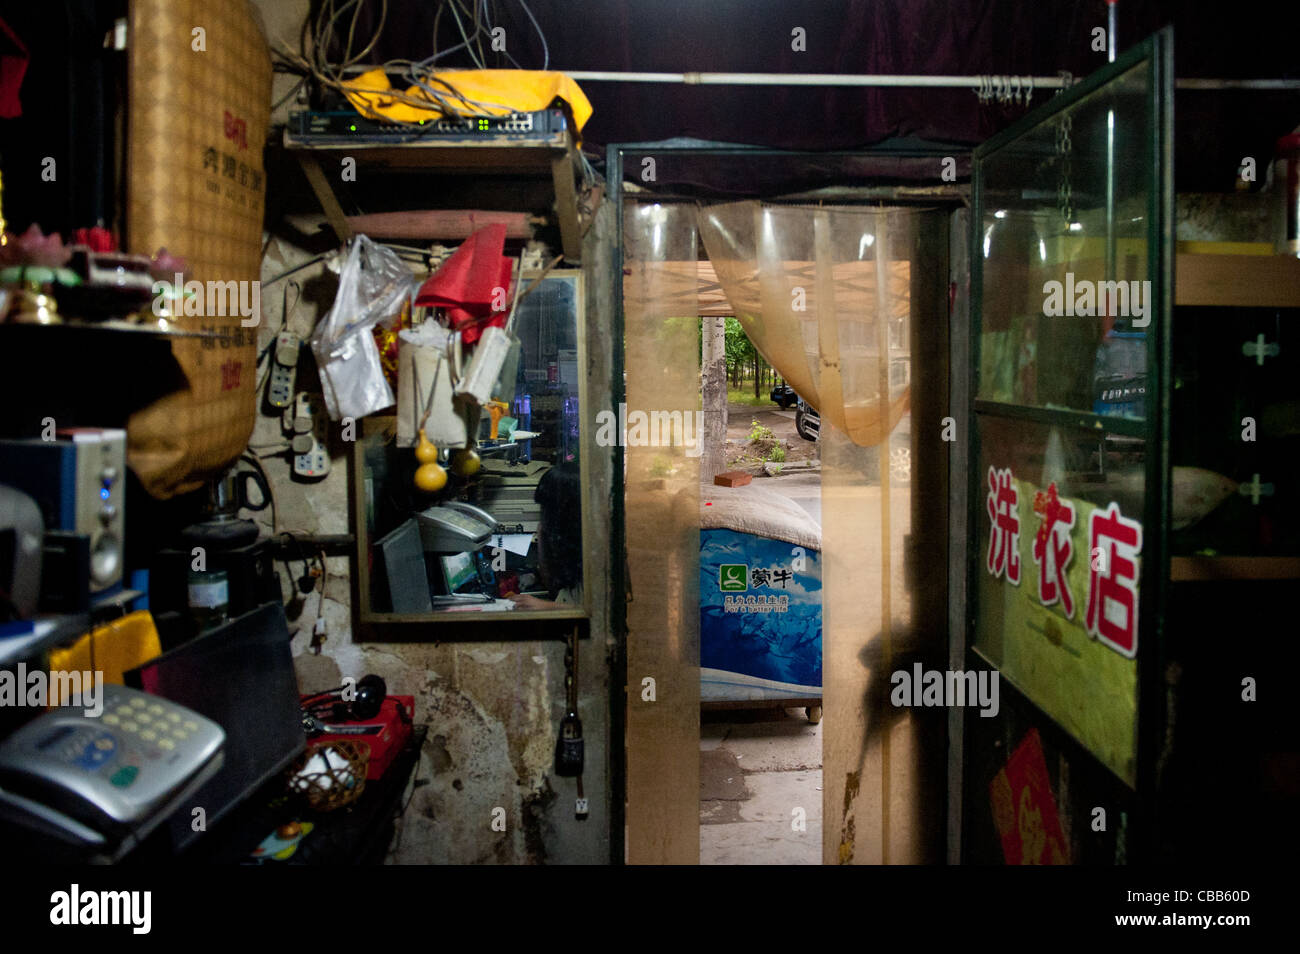 Innenraum des Fotografen-Shop. Eis und Wäscheservice sind auch im Shop verkauft. Stockfoto